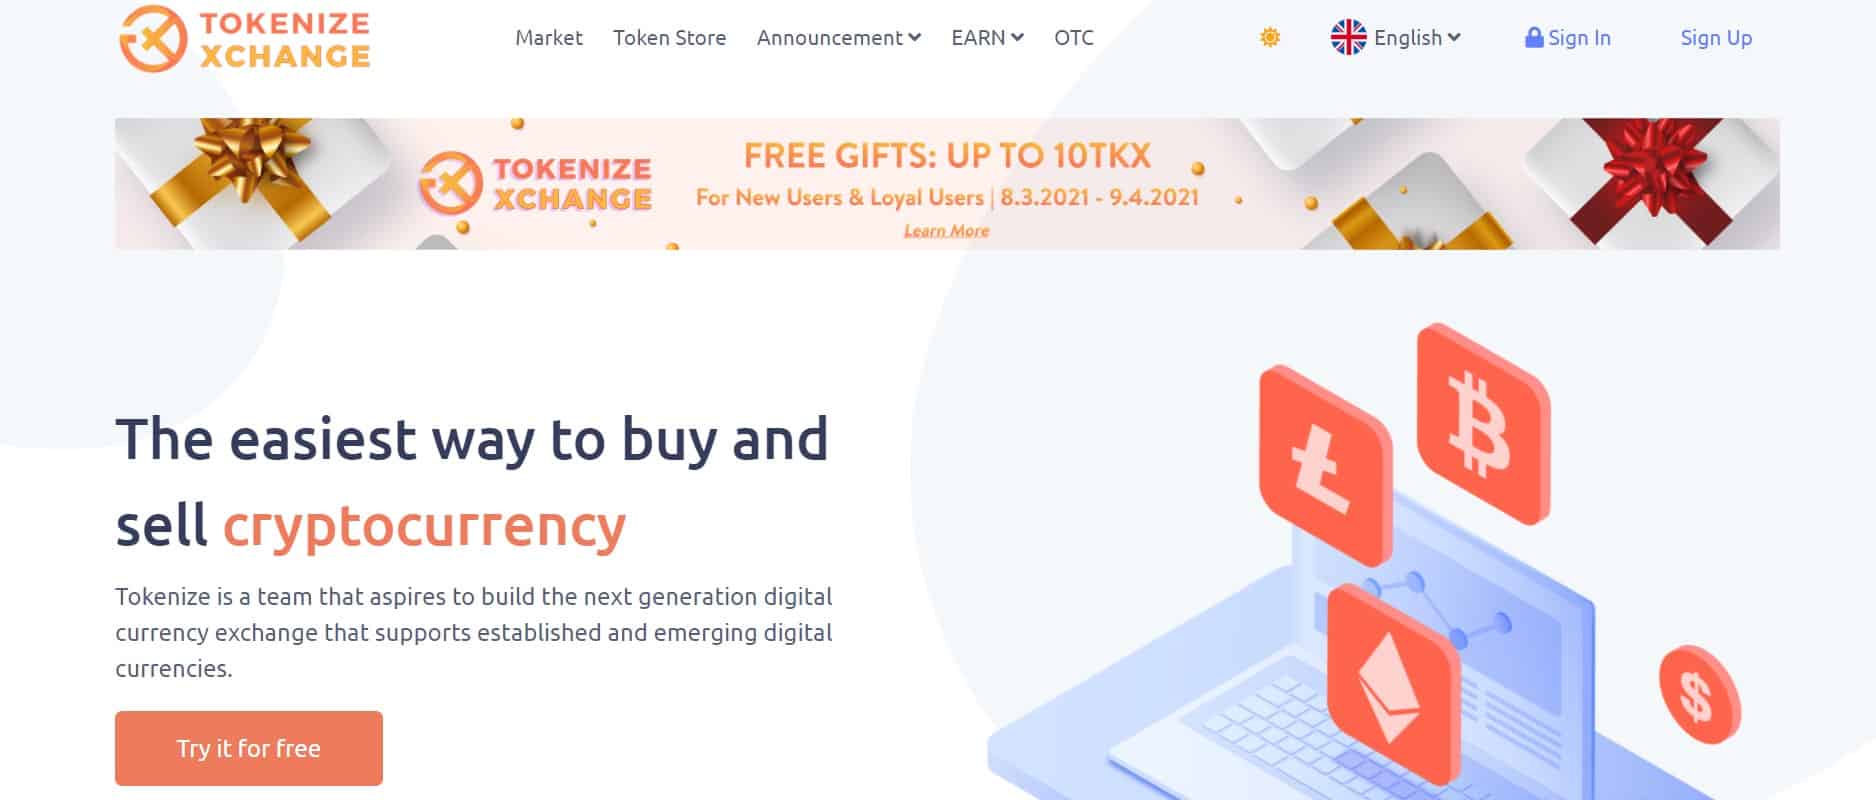 Tokenize Exchange website